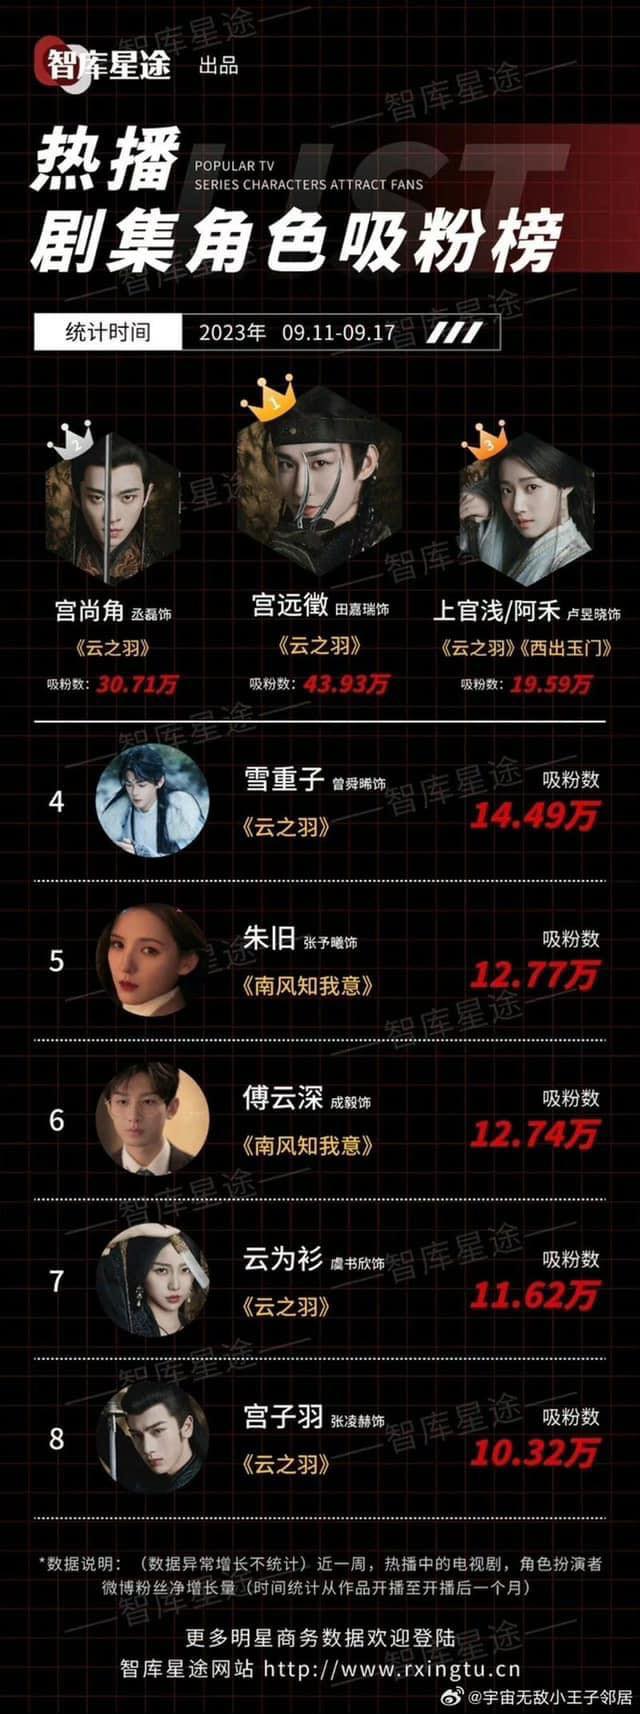 Vượt mặt nhiều diễn viên khác, Điền Gia Thụy vươn lên dẫn đầu lượng fan tăng của các nhân vật truyền hình (Nguồn: internet)